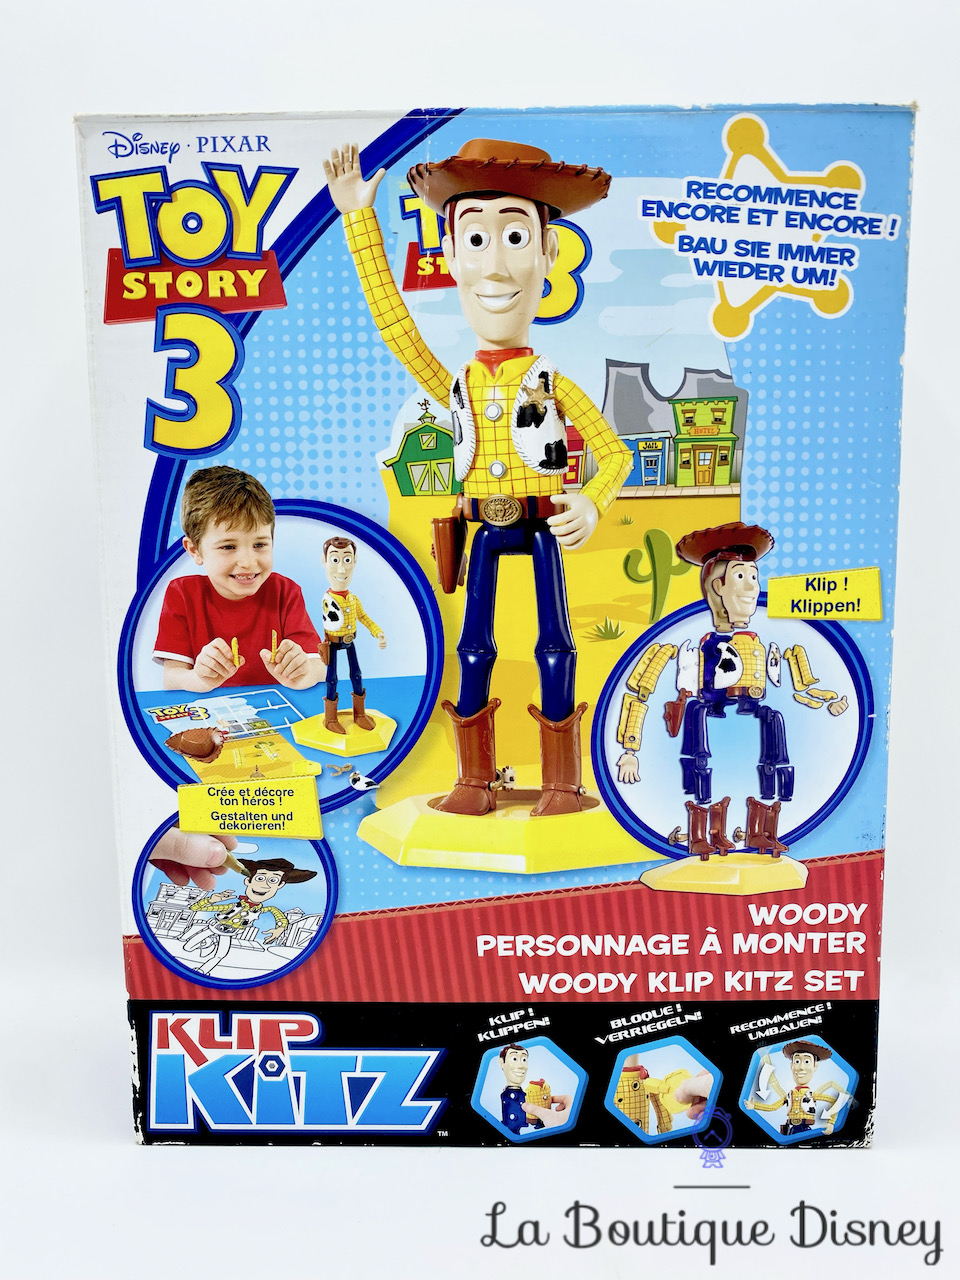 ☻ Jouet Voiture Télécommandée Buggy Buzz Toy Story 4 Disney Vendu